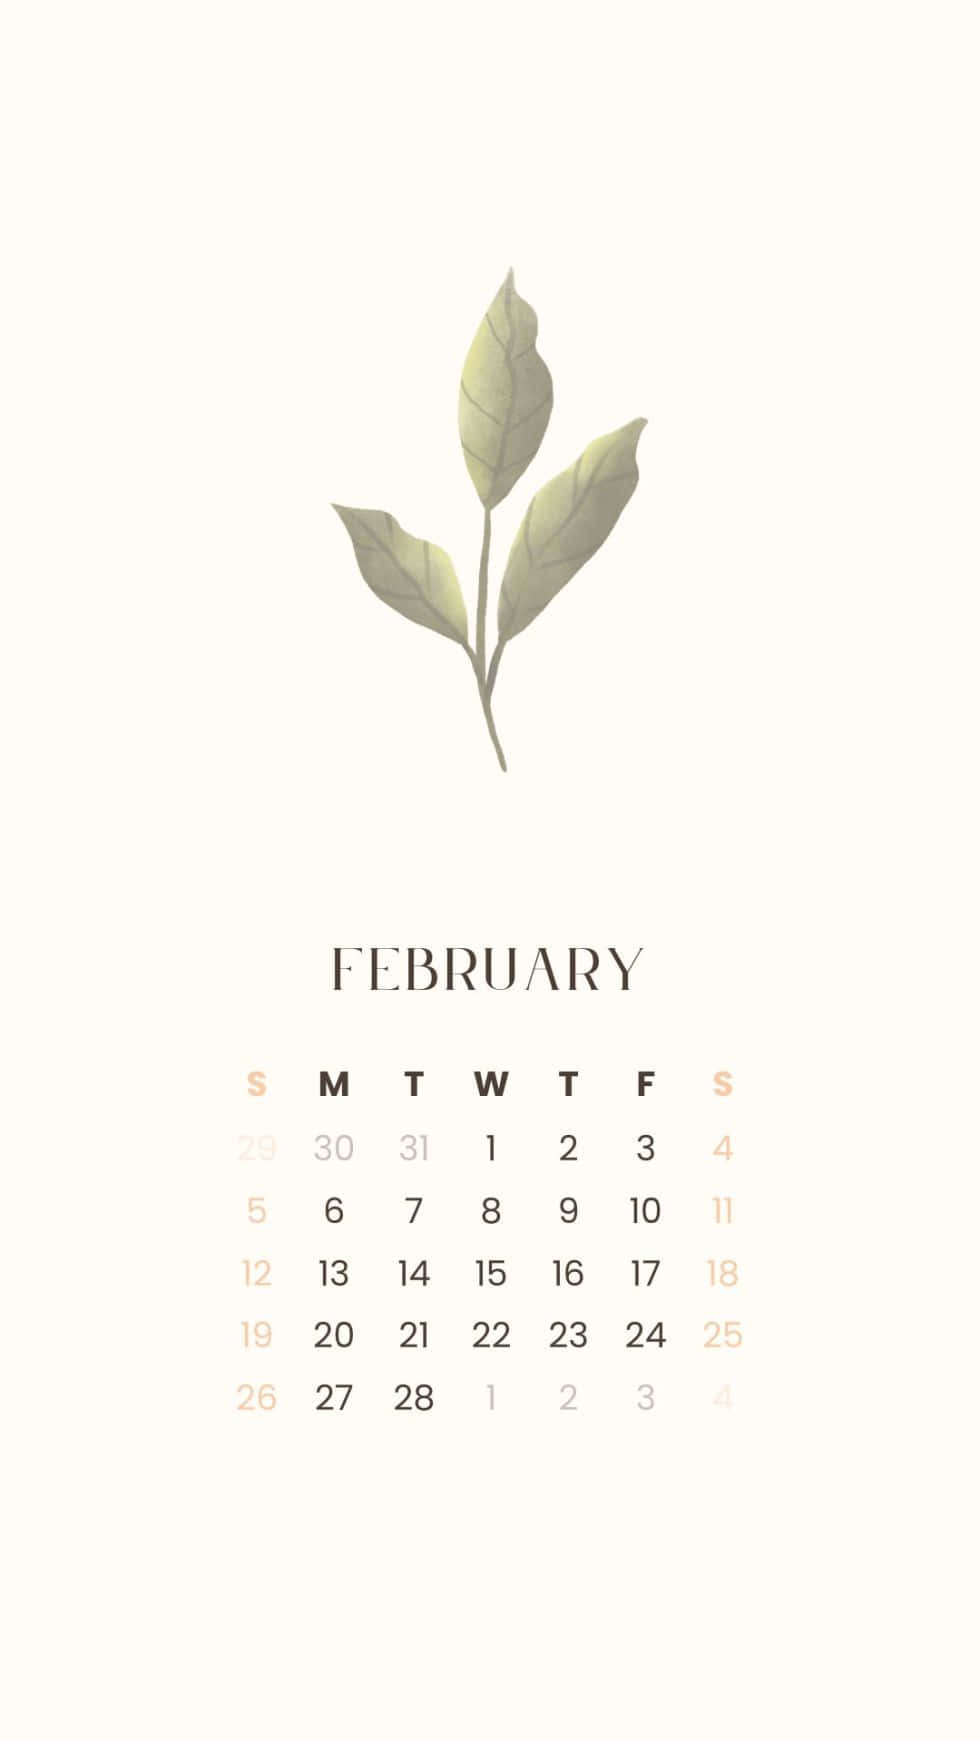 Calendariofebbraio 2019 Con Una Foglia Sopra Di Esso